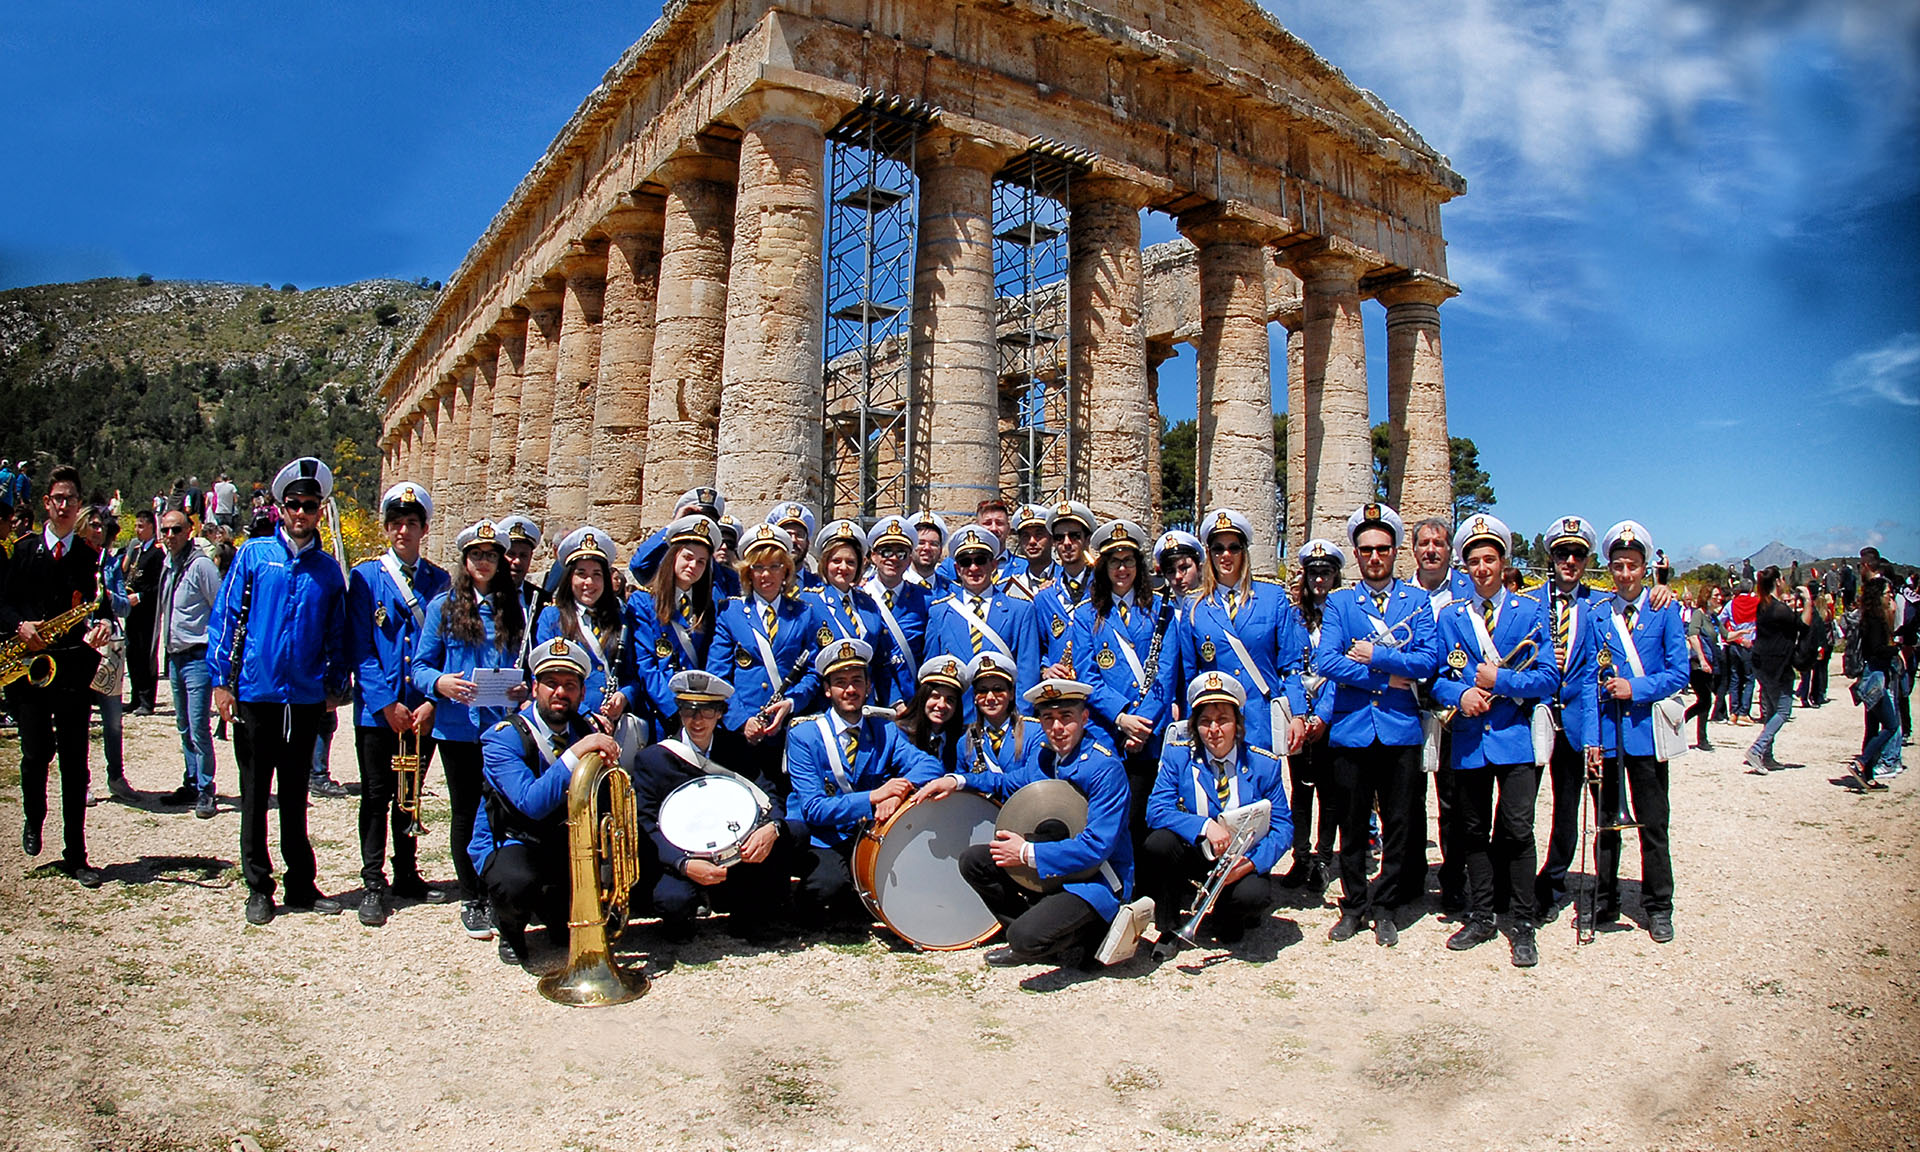 Associazione Musicale “Calatafimi-Segesta” (TP)